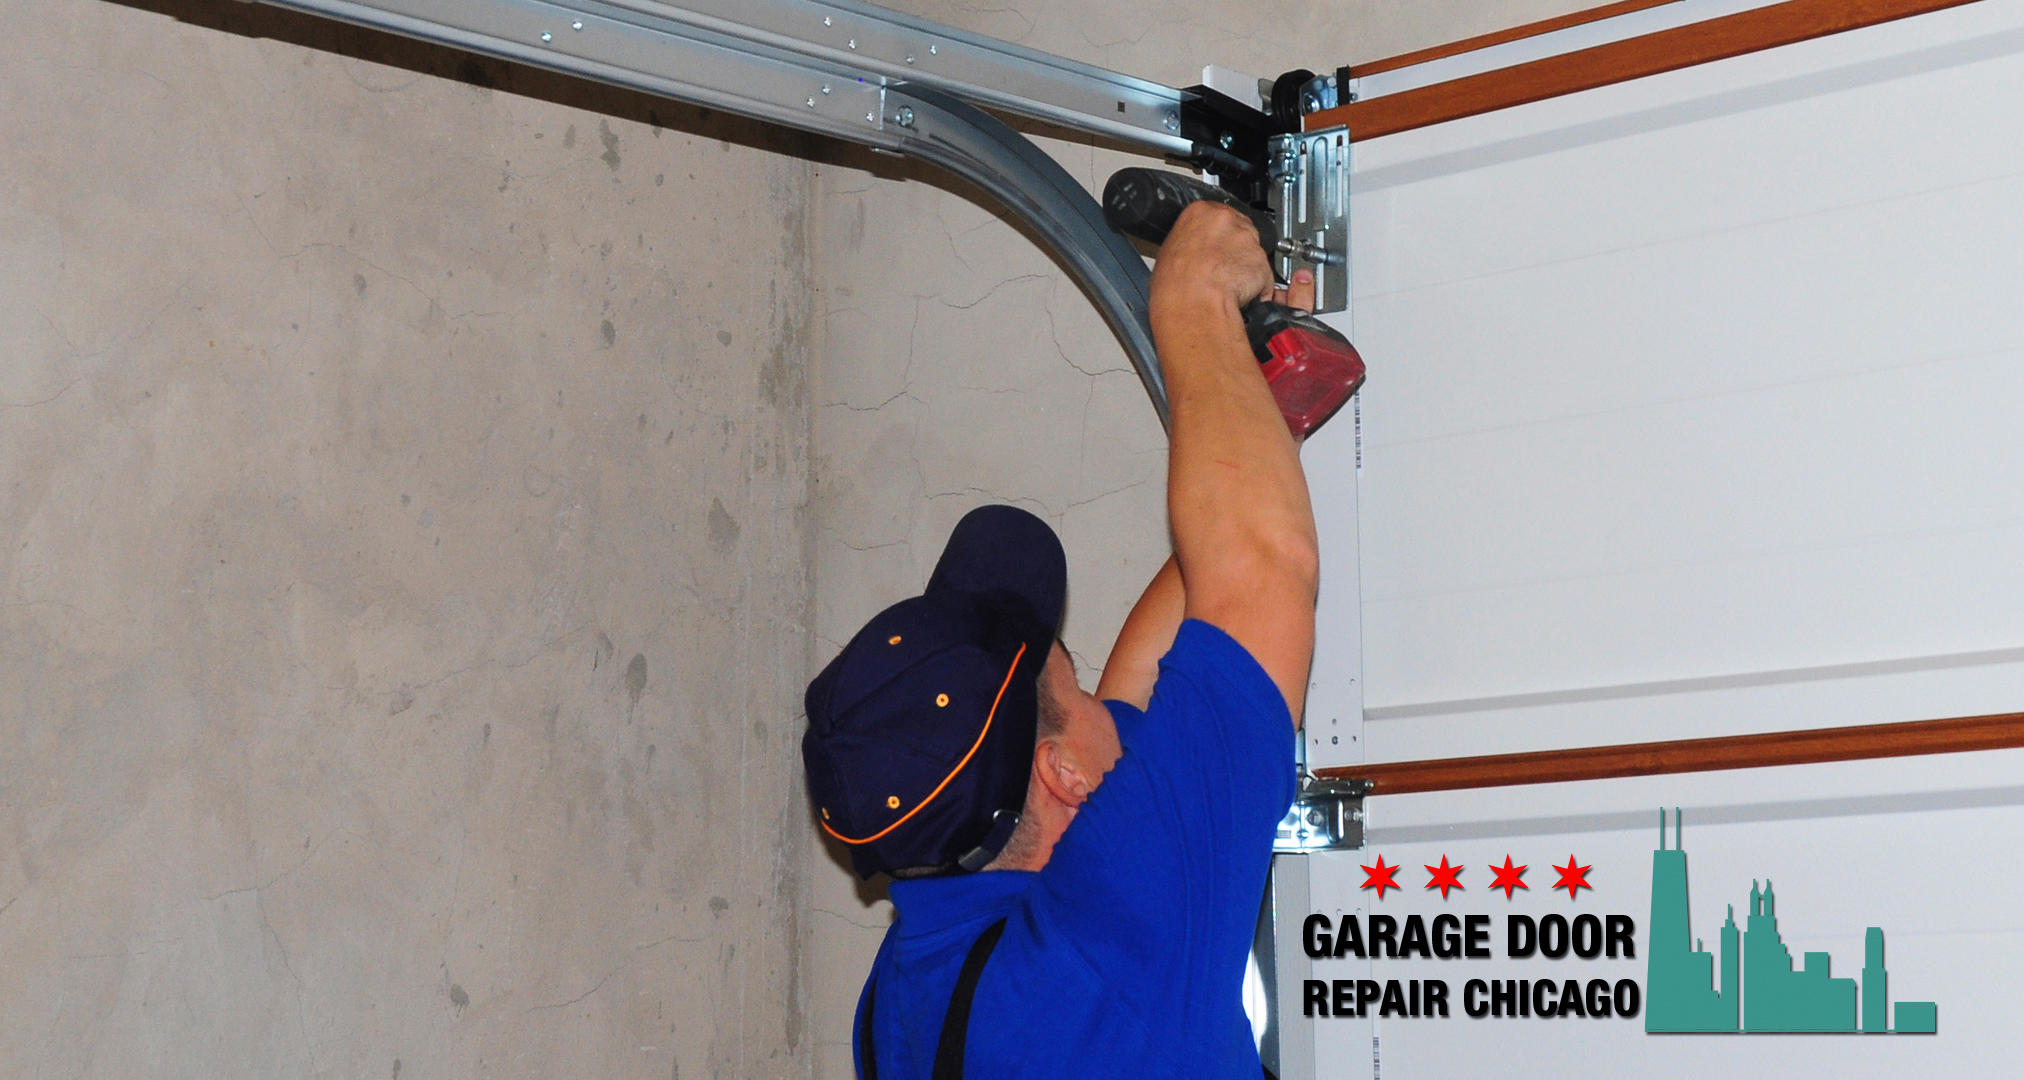 Garage Door Repair Chicago - 2024x1080